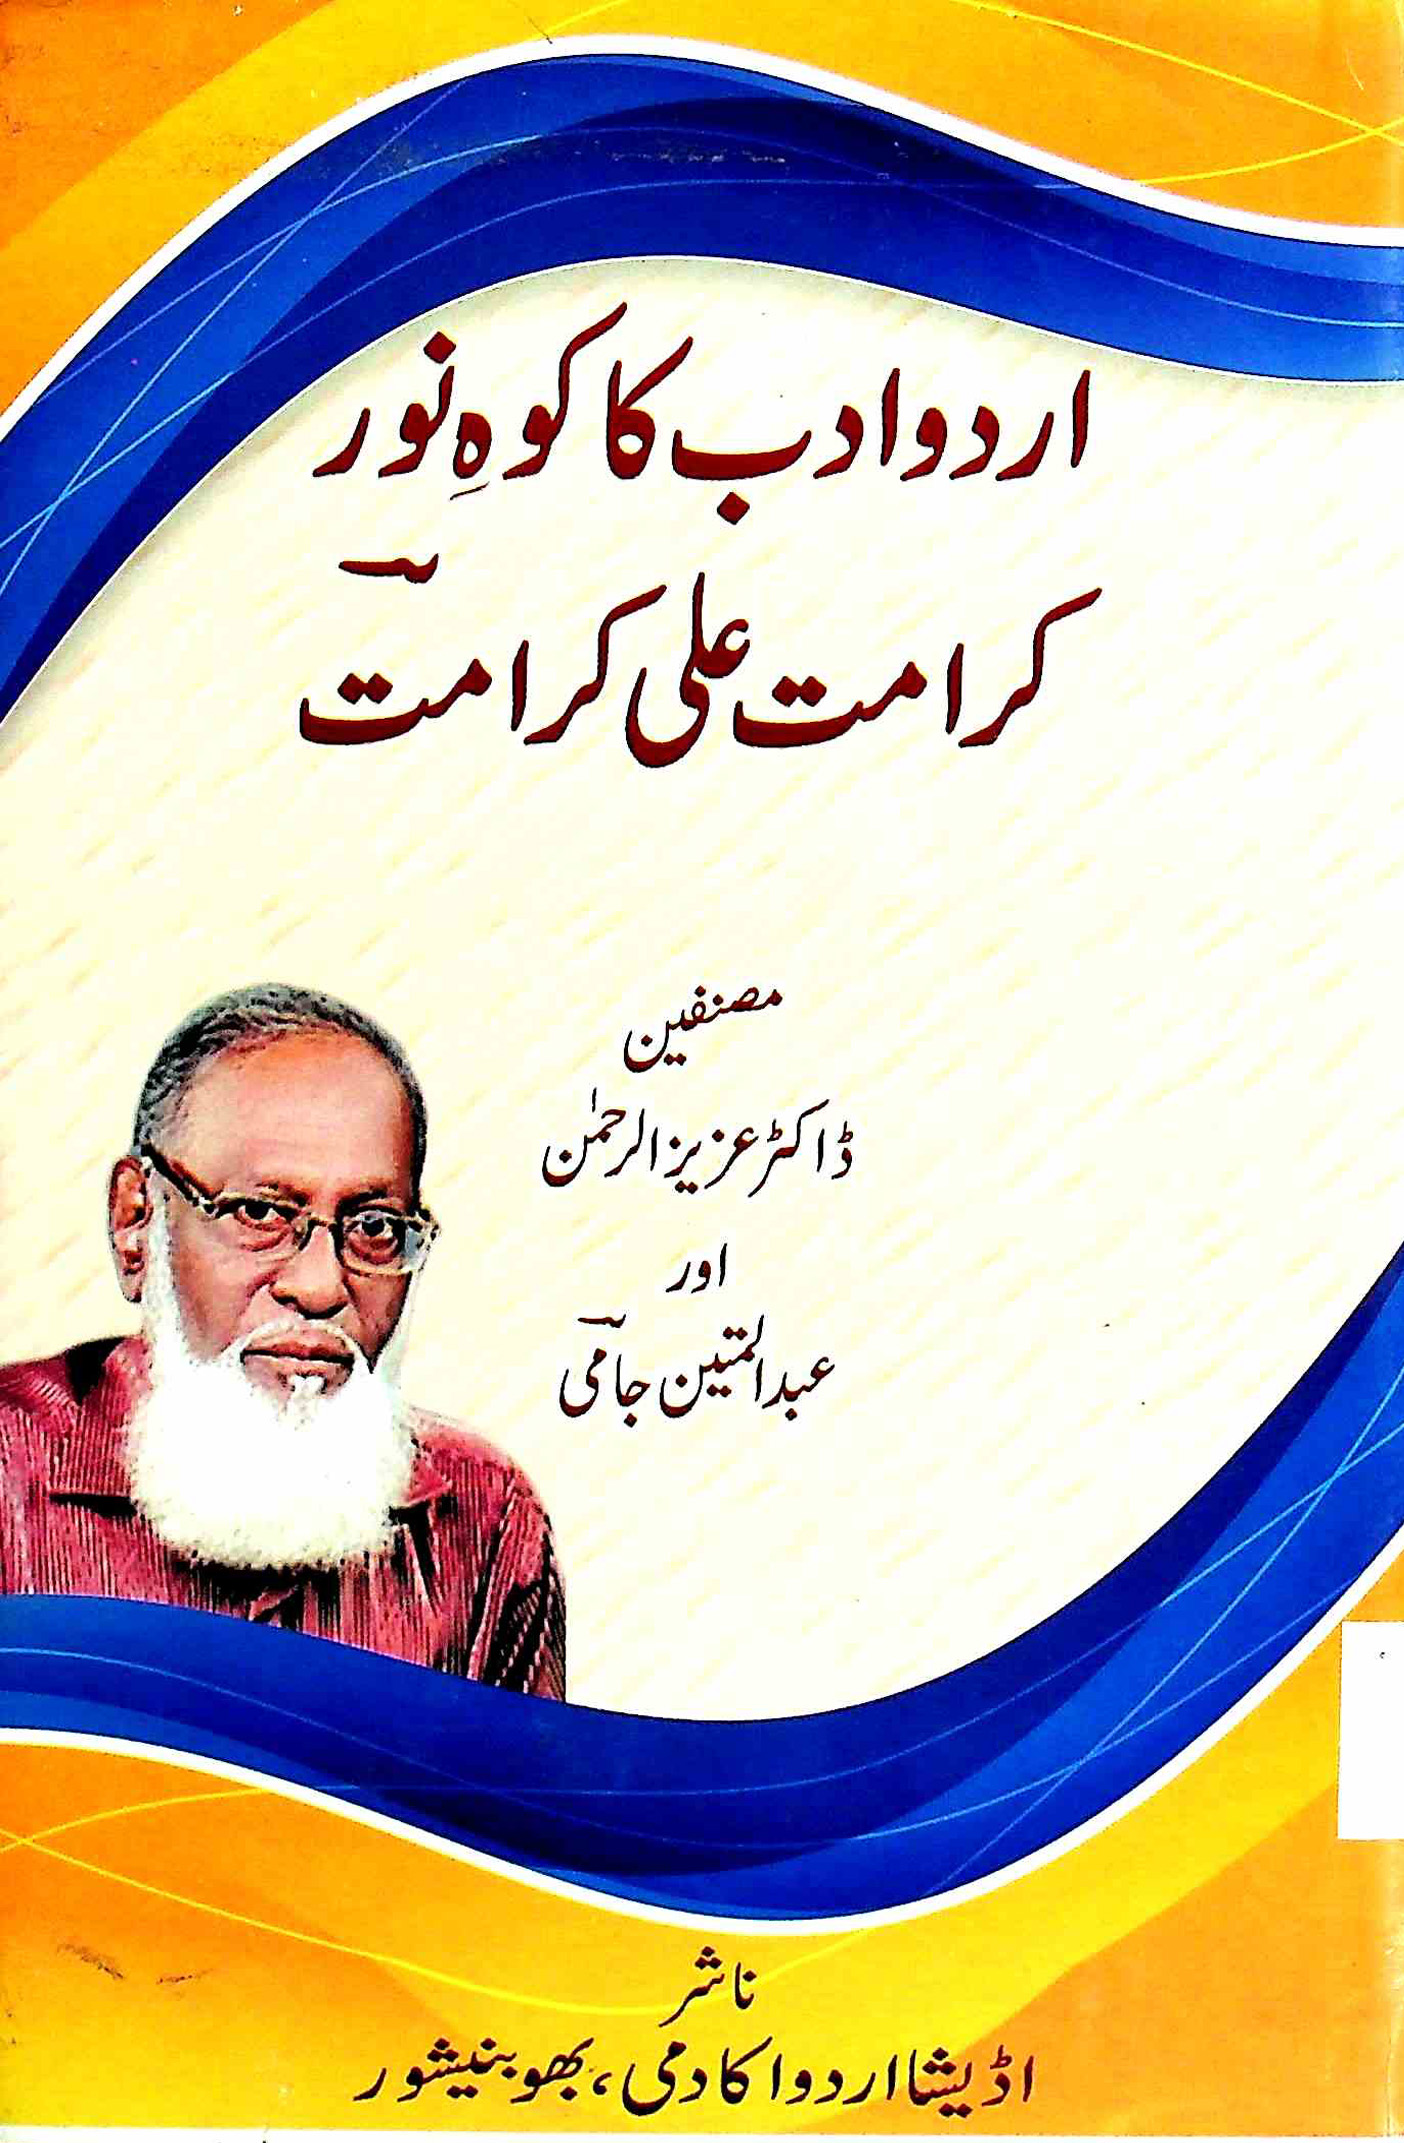 Urdu Adab Ka Koh-e-Noor karamat Ali Karamat